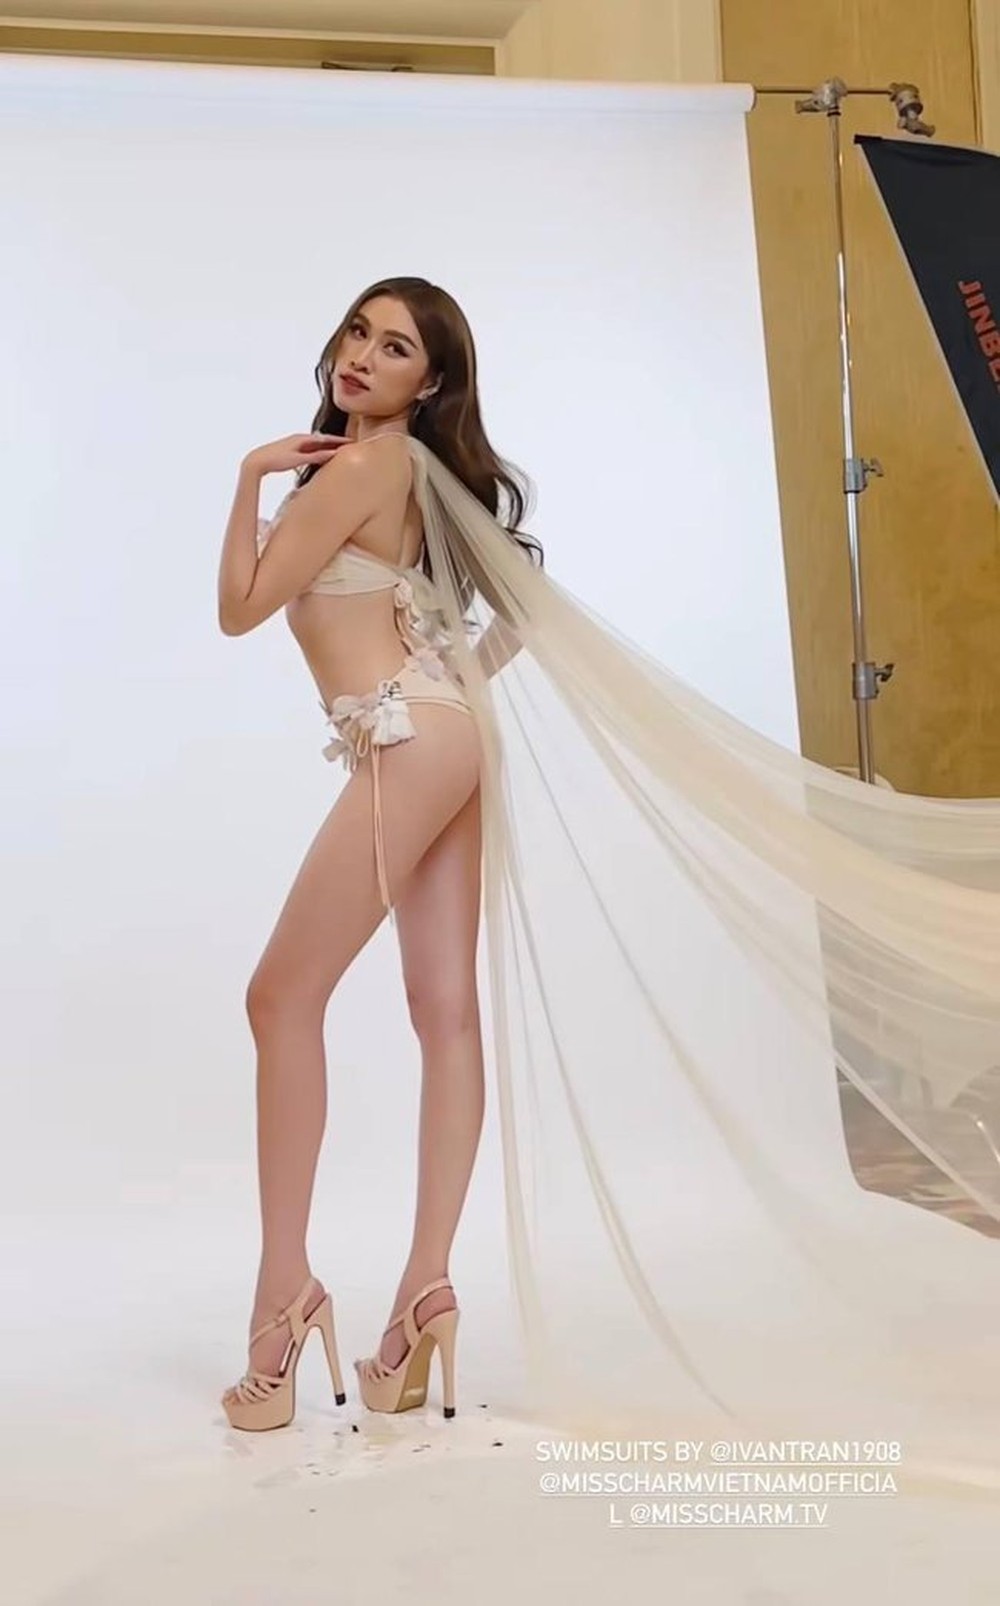 Thanh Thanh Huyền gợi cảm khi diện bikini, khoe 1 đặc điểm gây sốt giống với Hoa hậu Đỗ Hà - Ảnh 4.